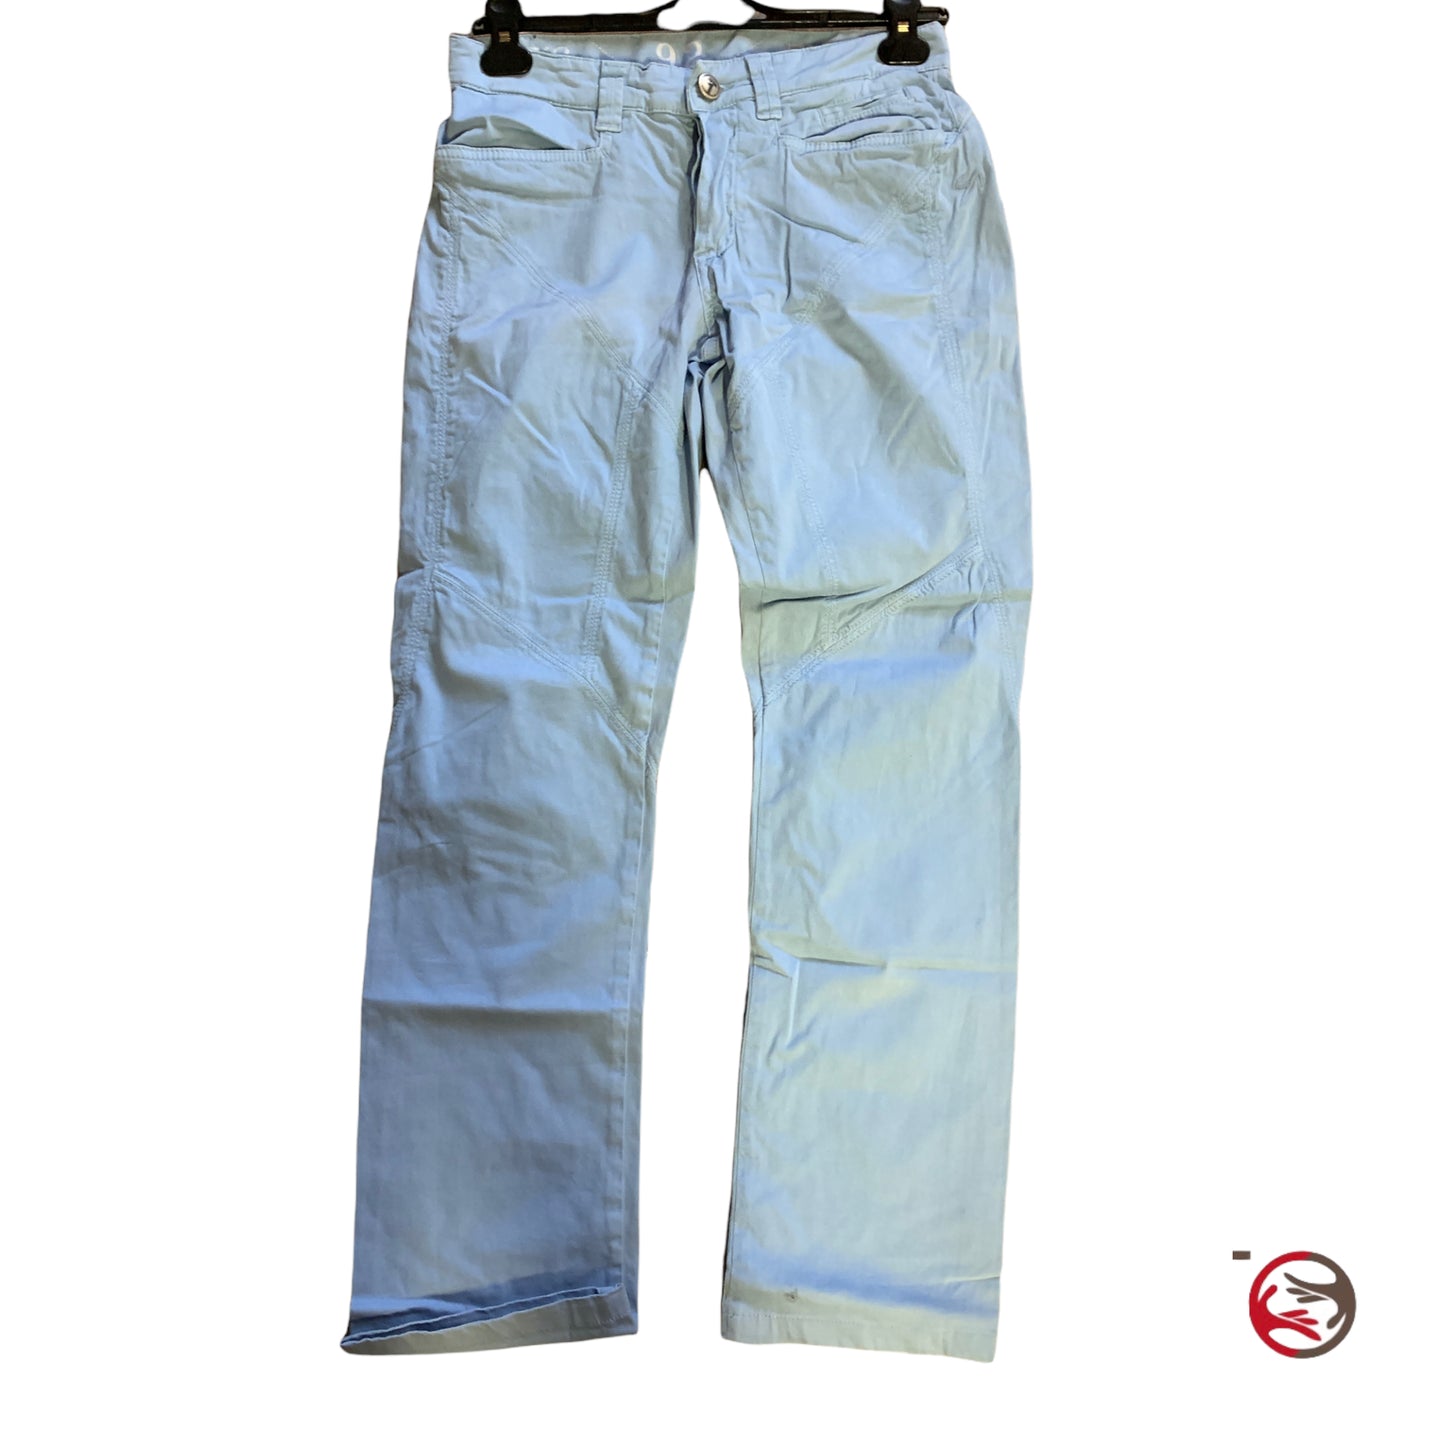 9.2 light blue men's trousers size M